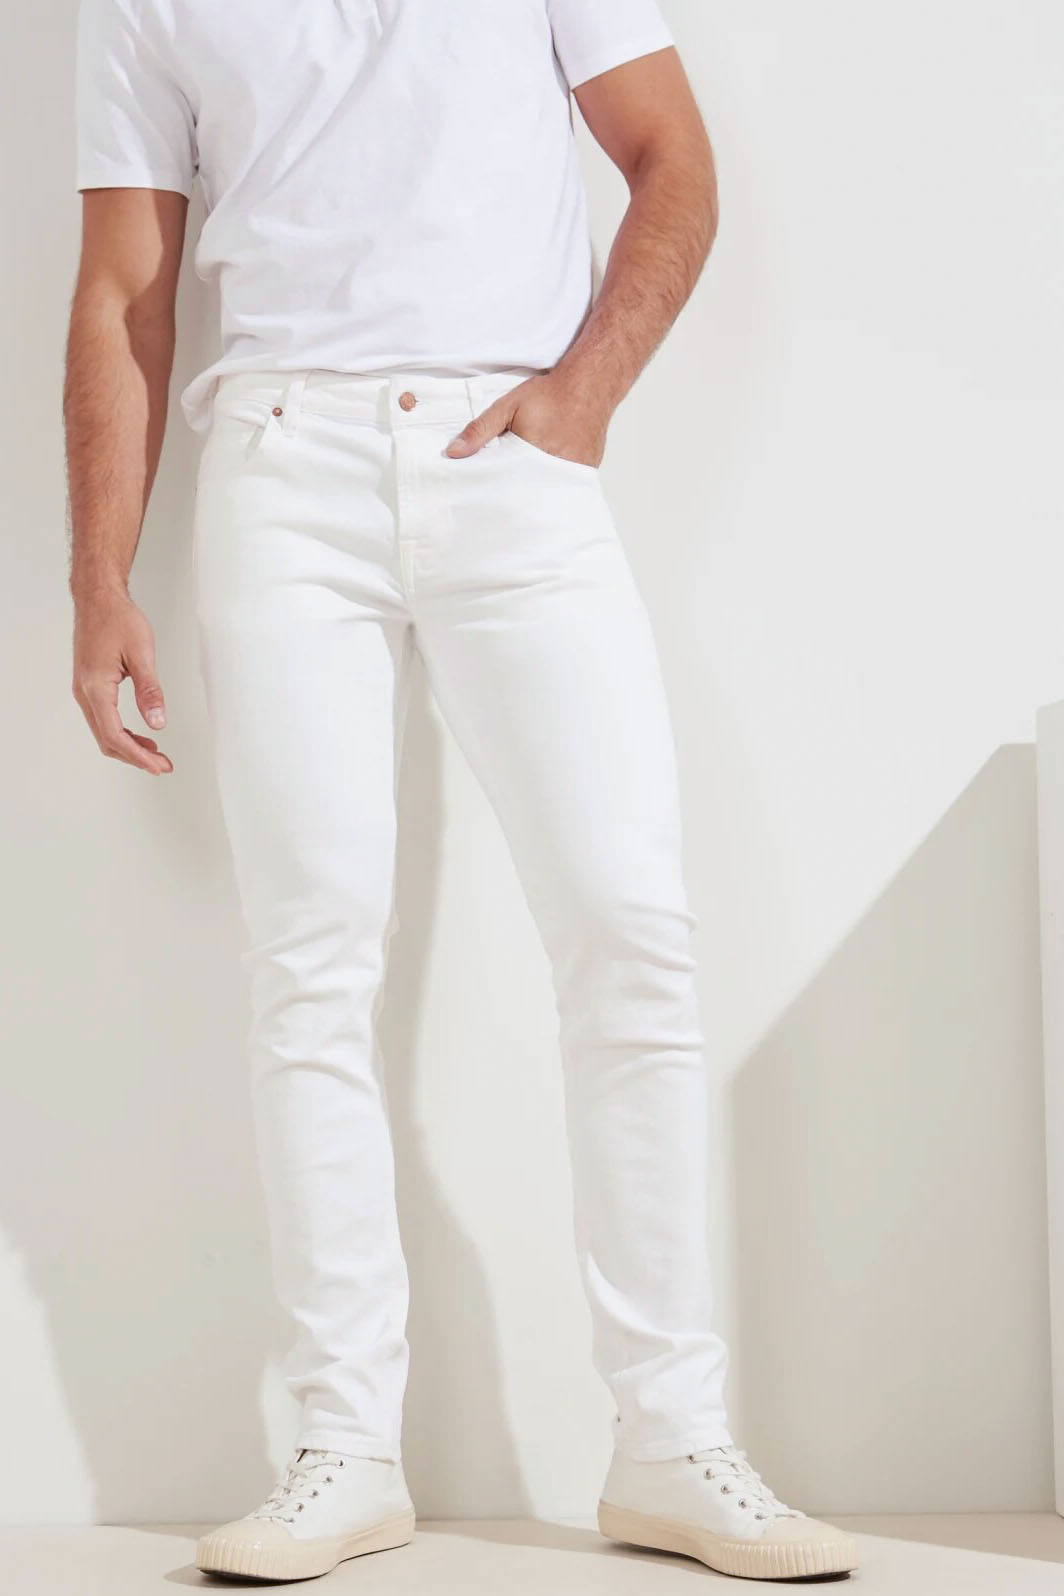 censura Dardos piloto Pantalón de la marca Guess Jeans de color Blanco para hombre